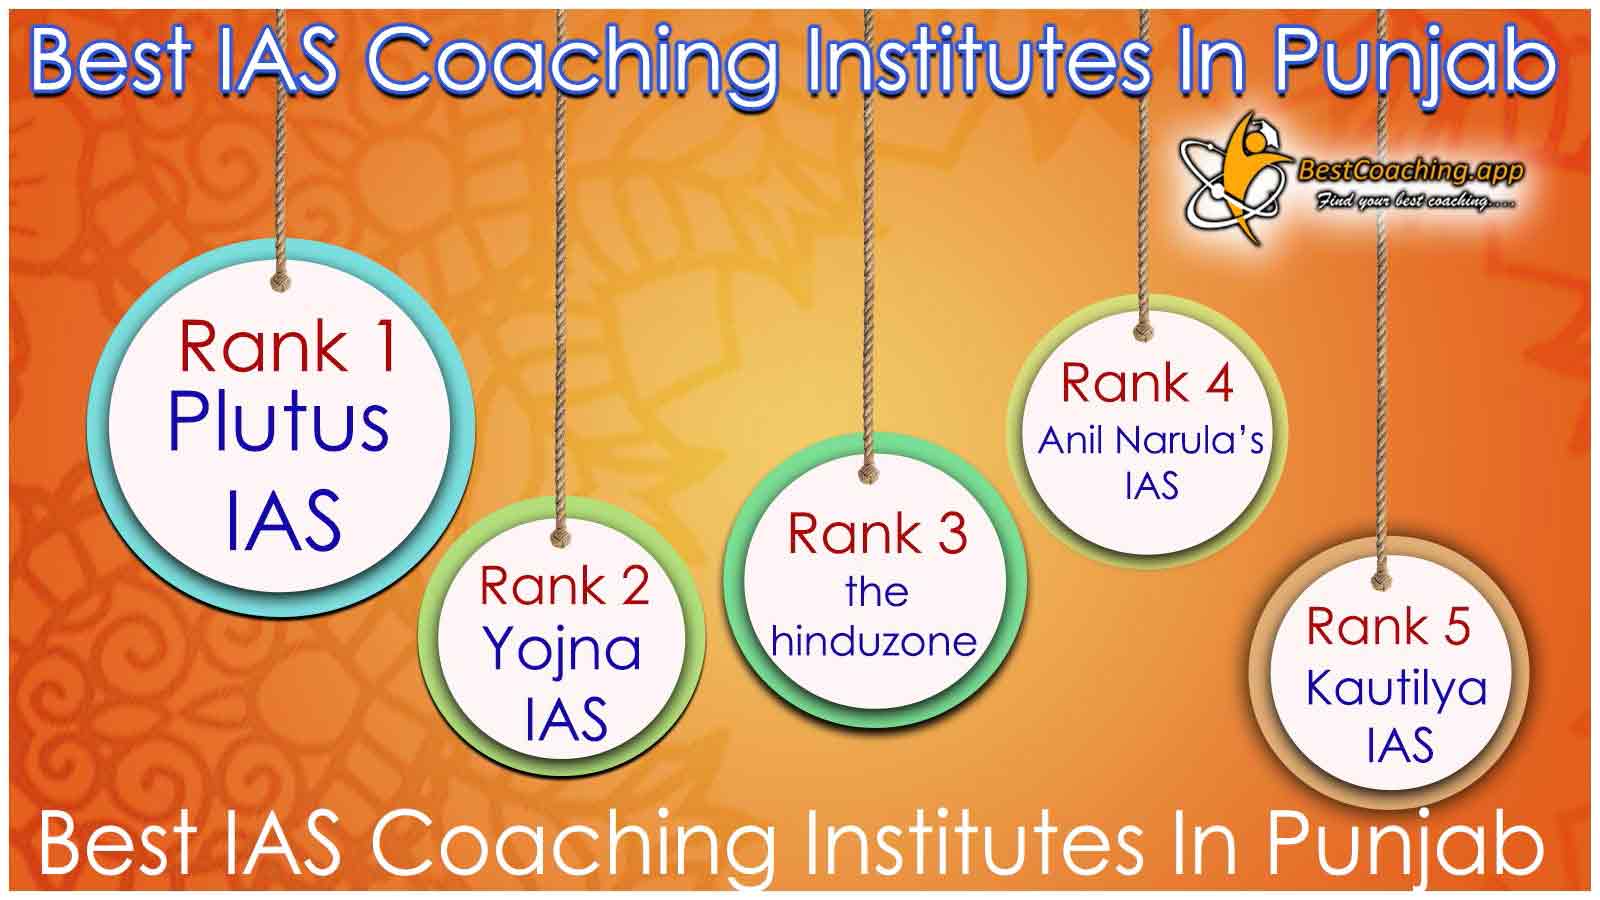 Best IAS Coaching in Punjab